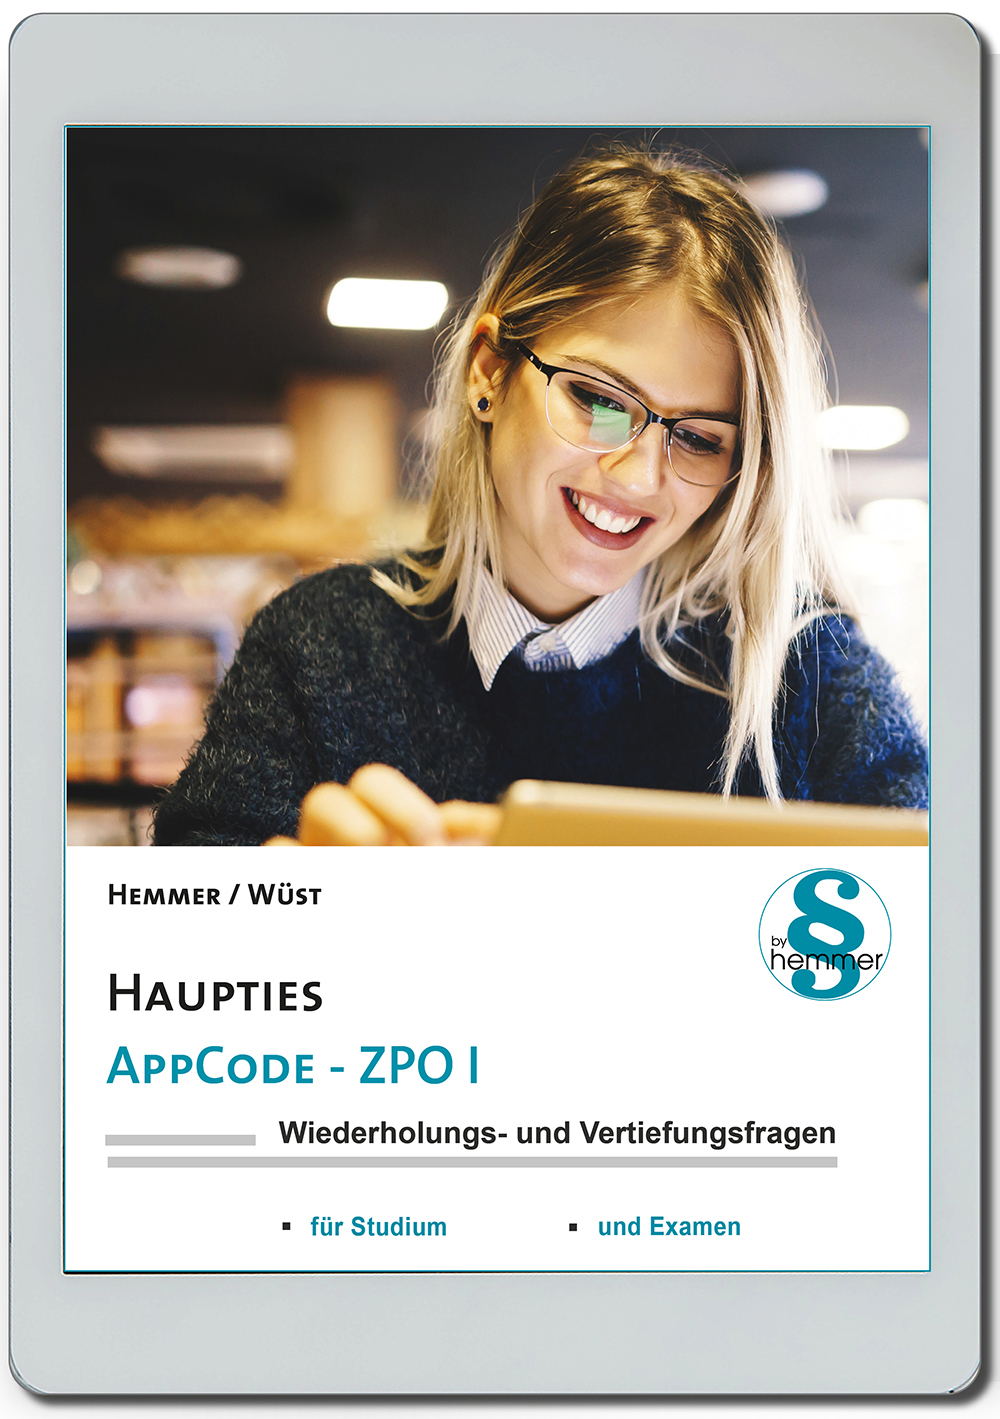 AppCode - haupties - Zivilprozessrecht I (ZPO)